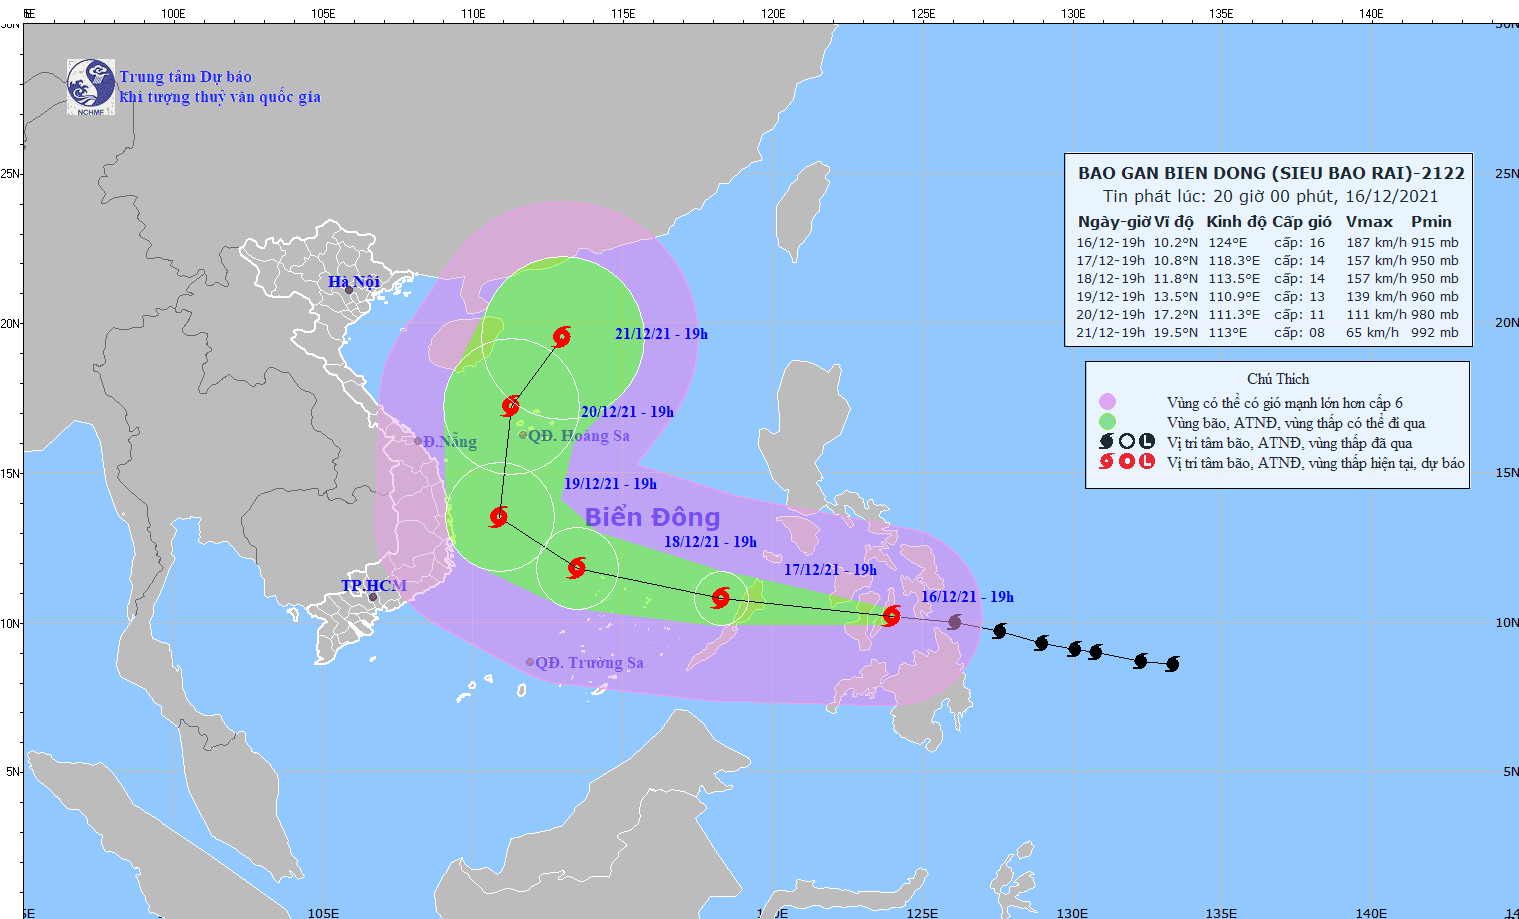 Dự báo về vị trí và hướng đi của siêu bão Rai. Ảnh: nchmf.gov.vn